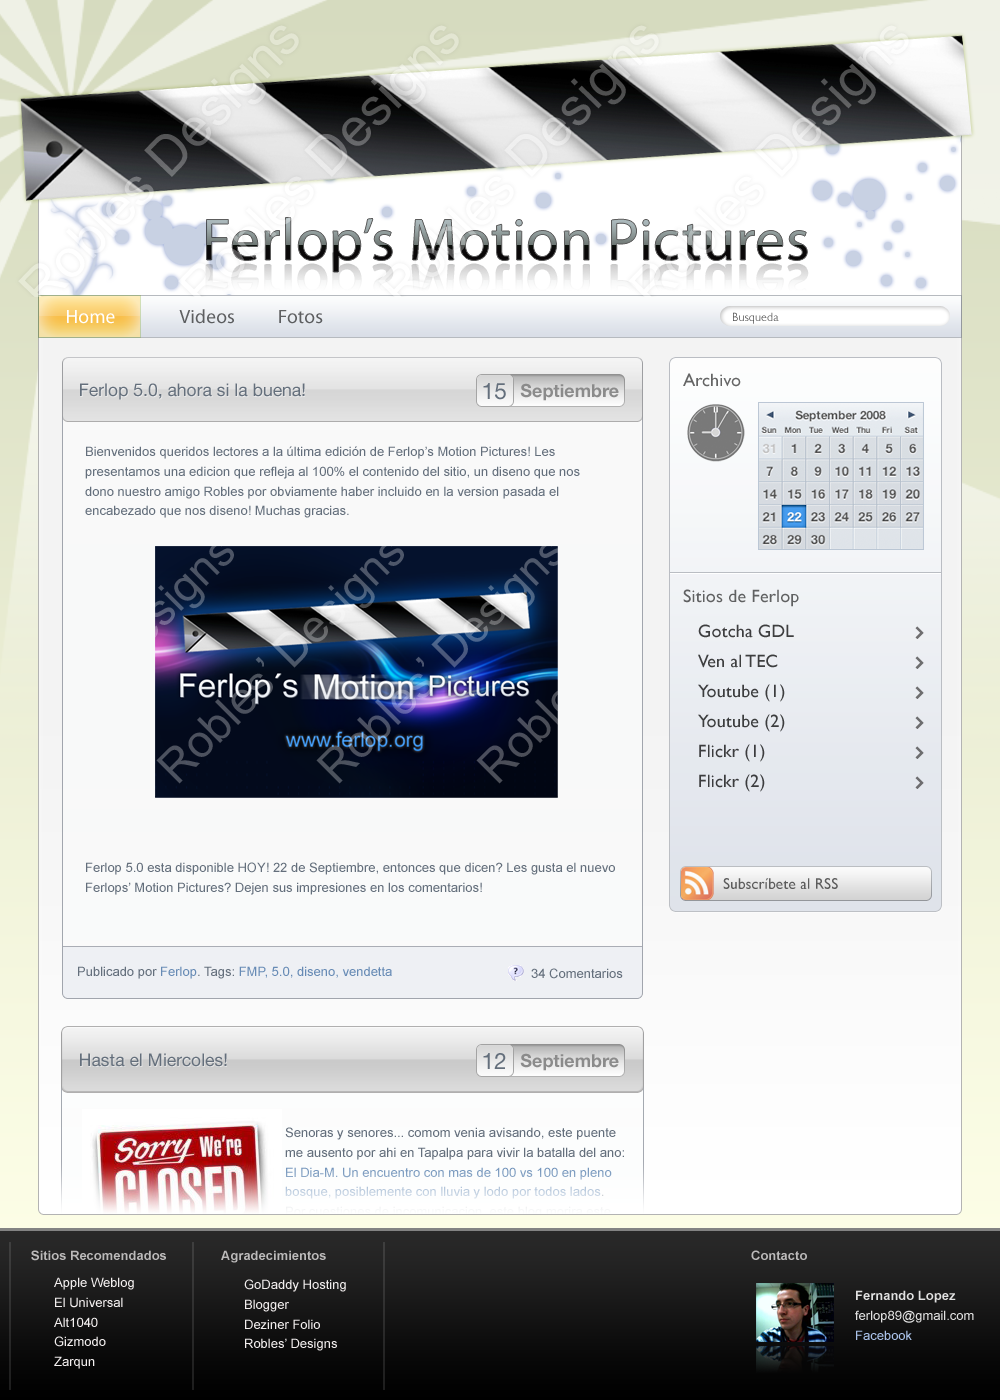 Ferlop's motion pictures